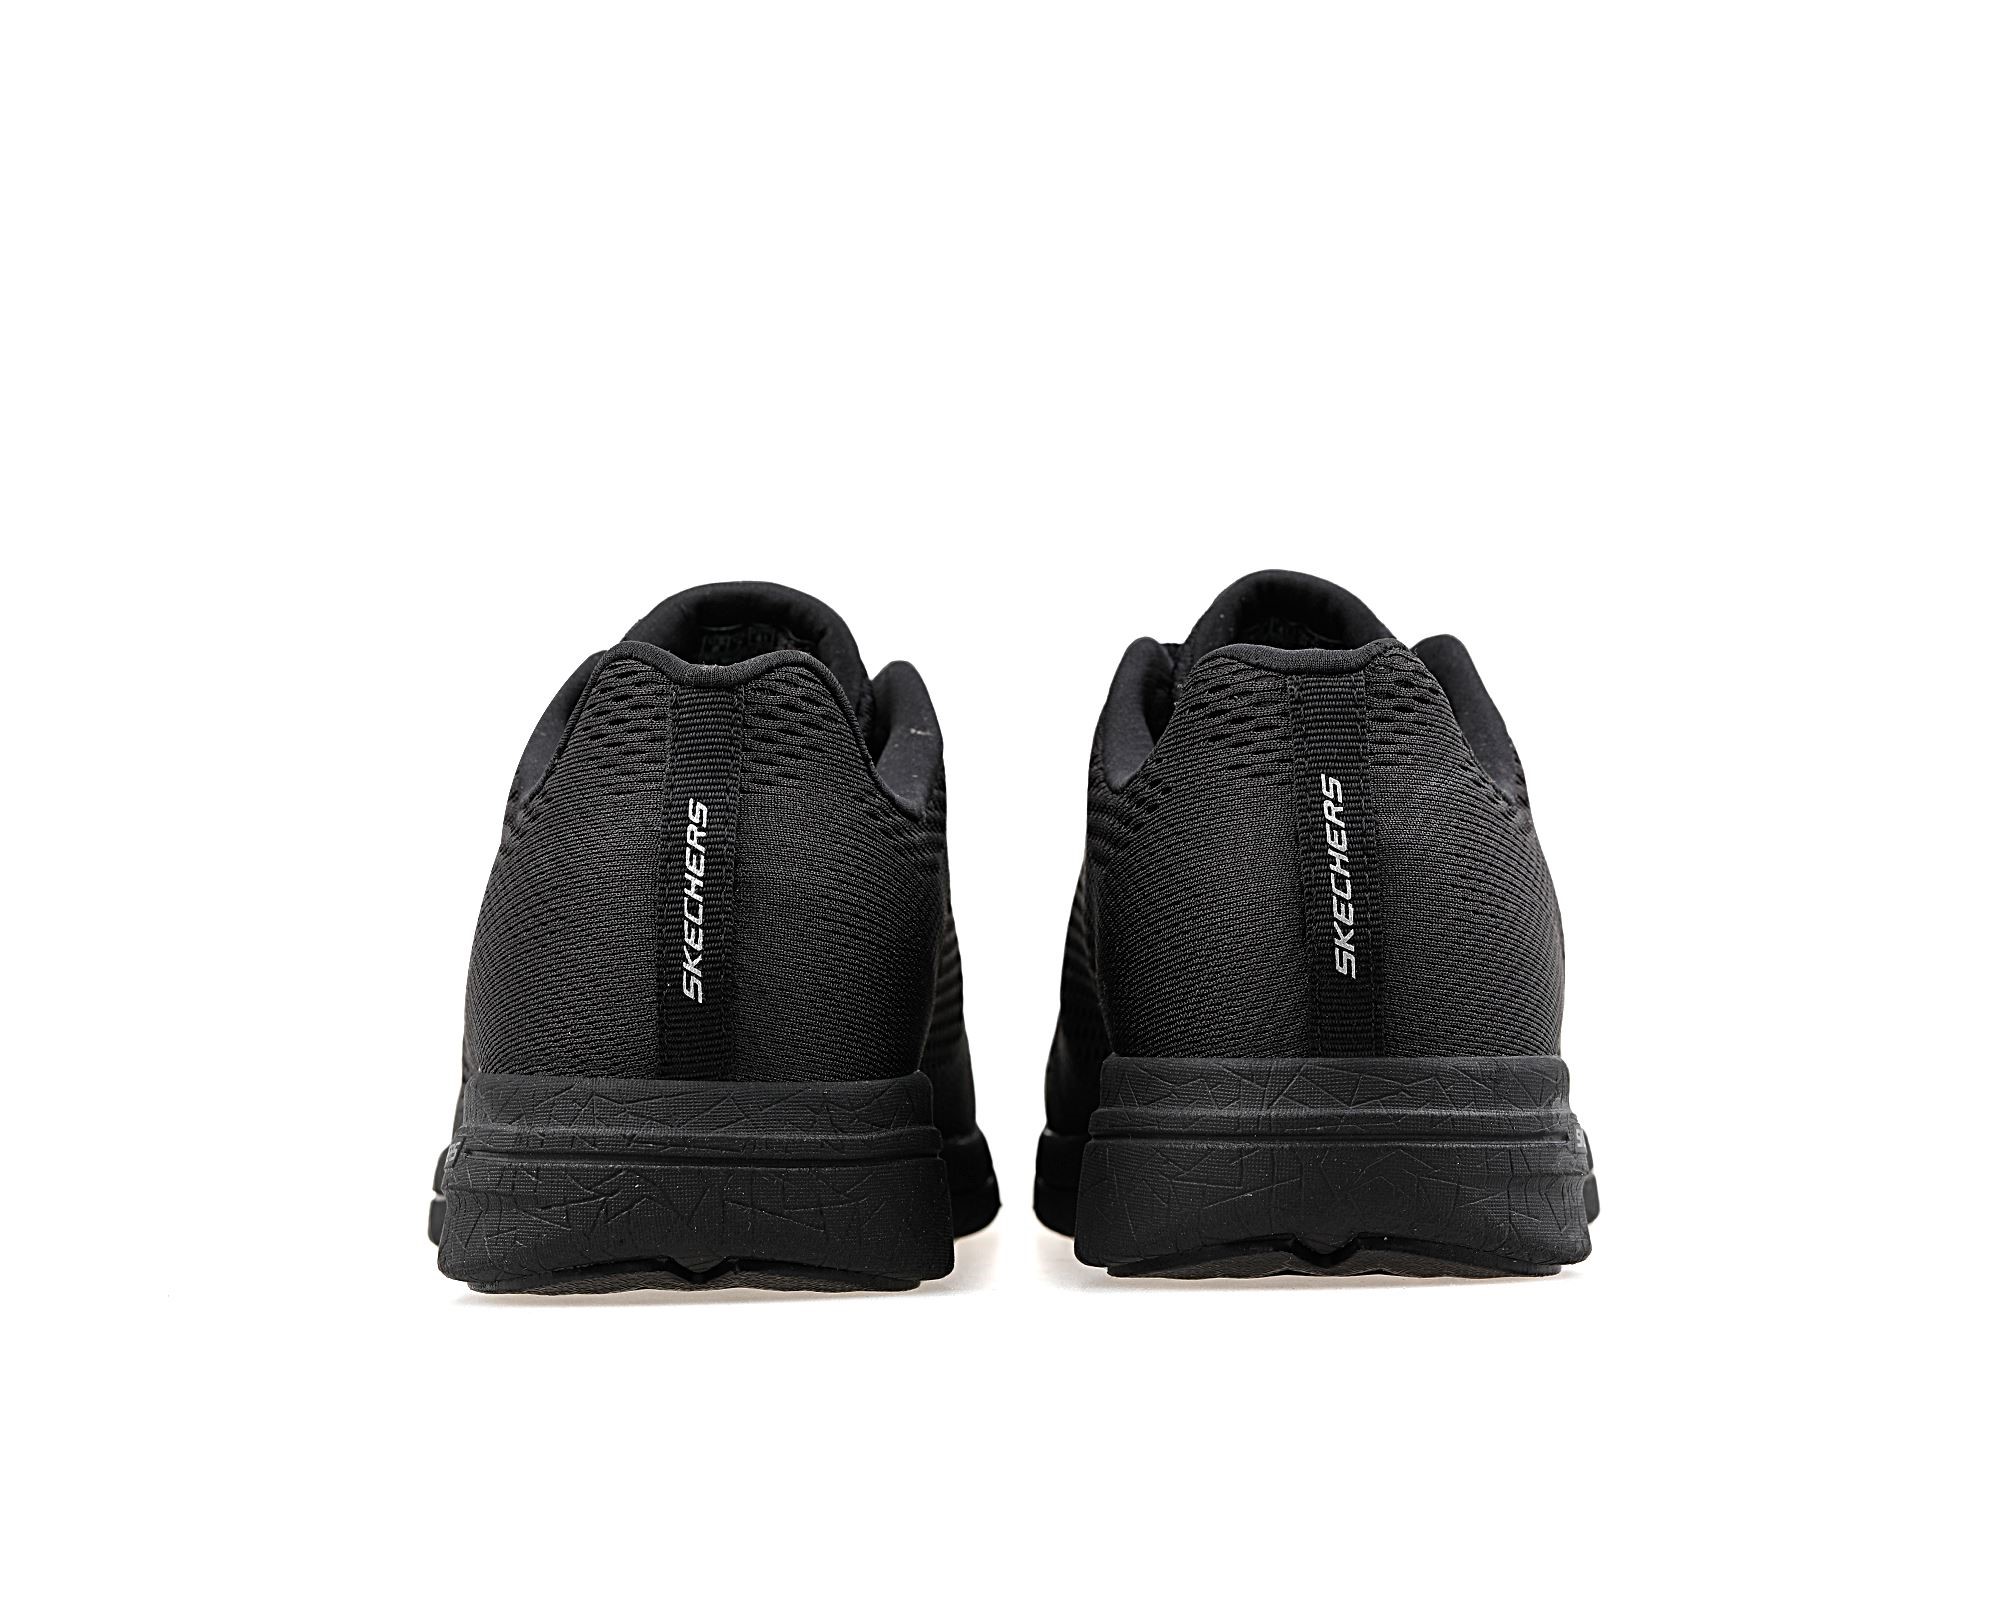 Skechers Erkek Ayakkabı 999739 Siyah